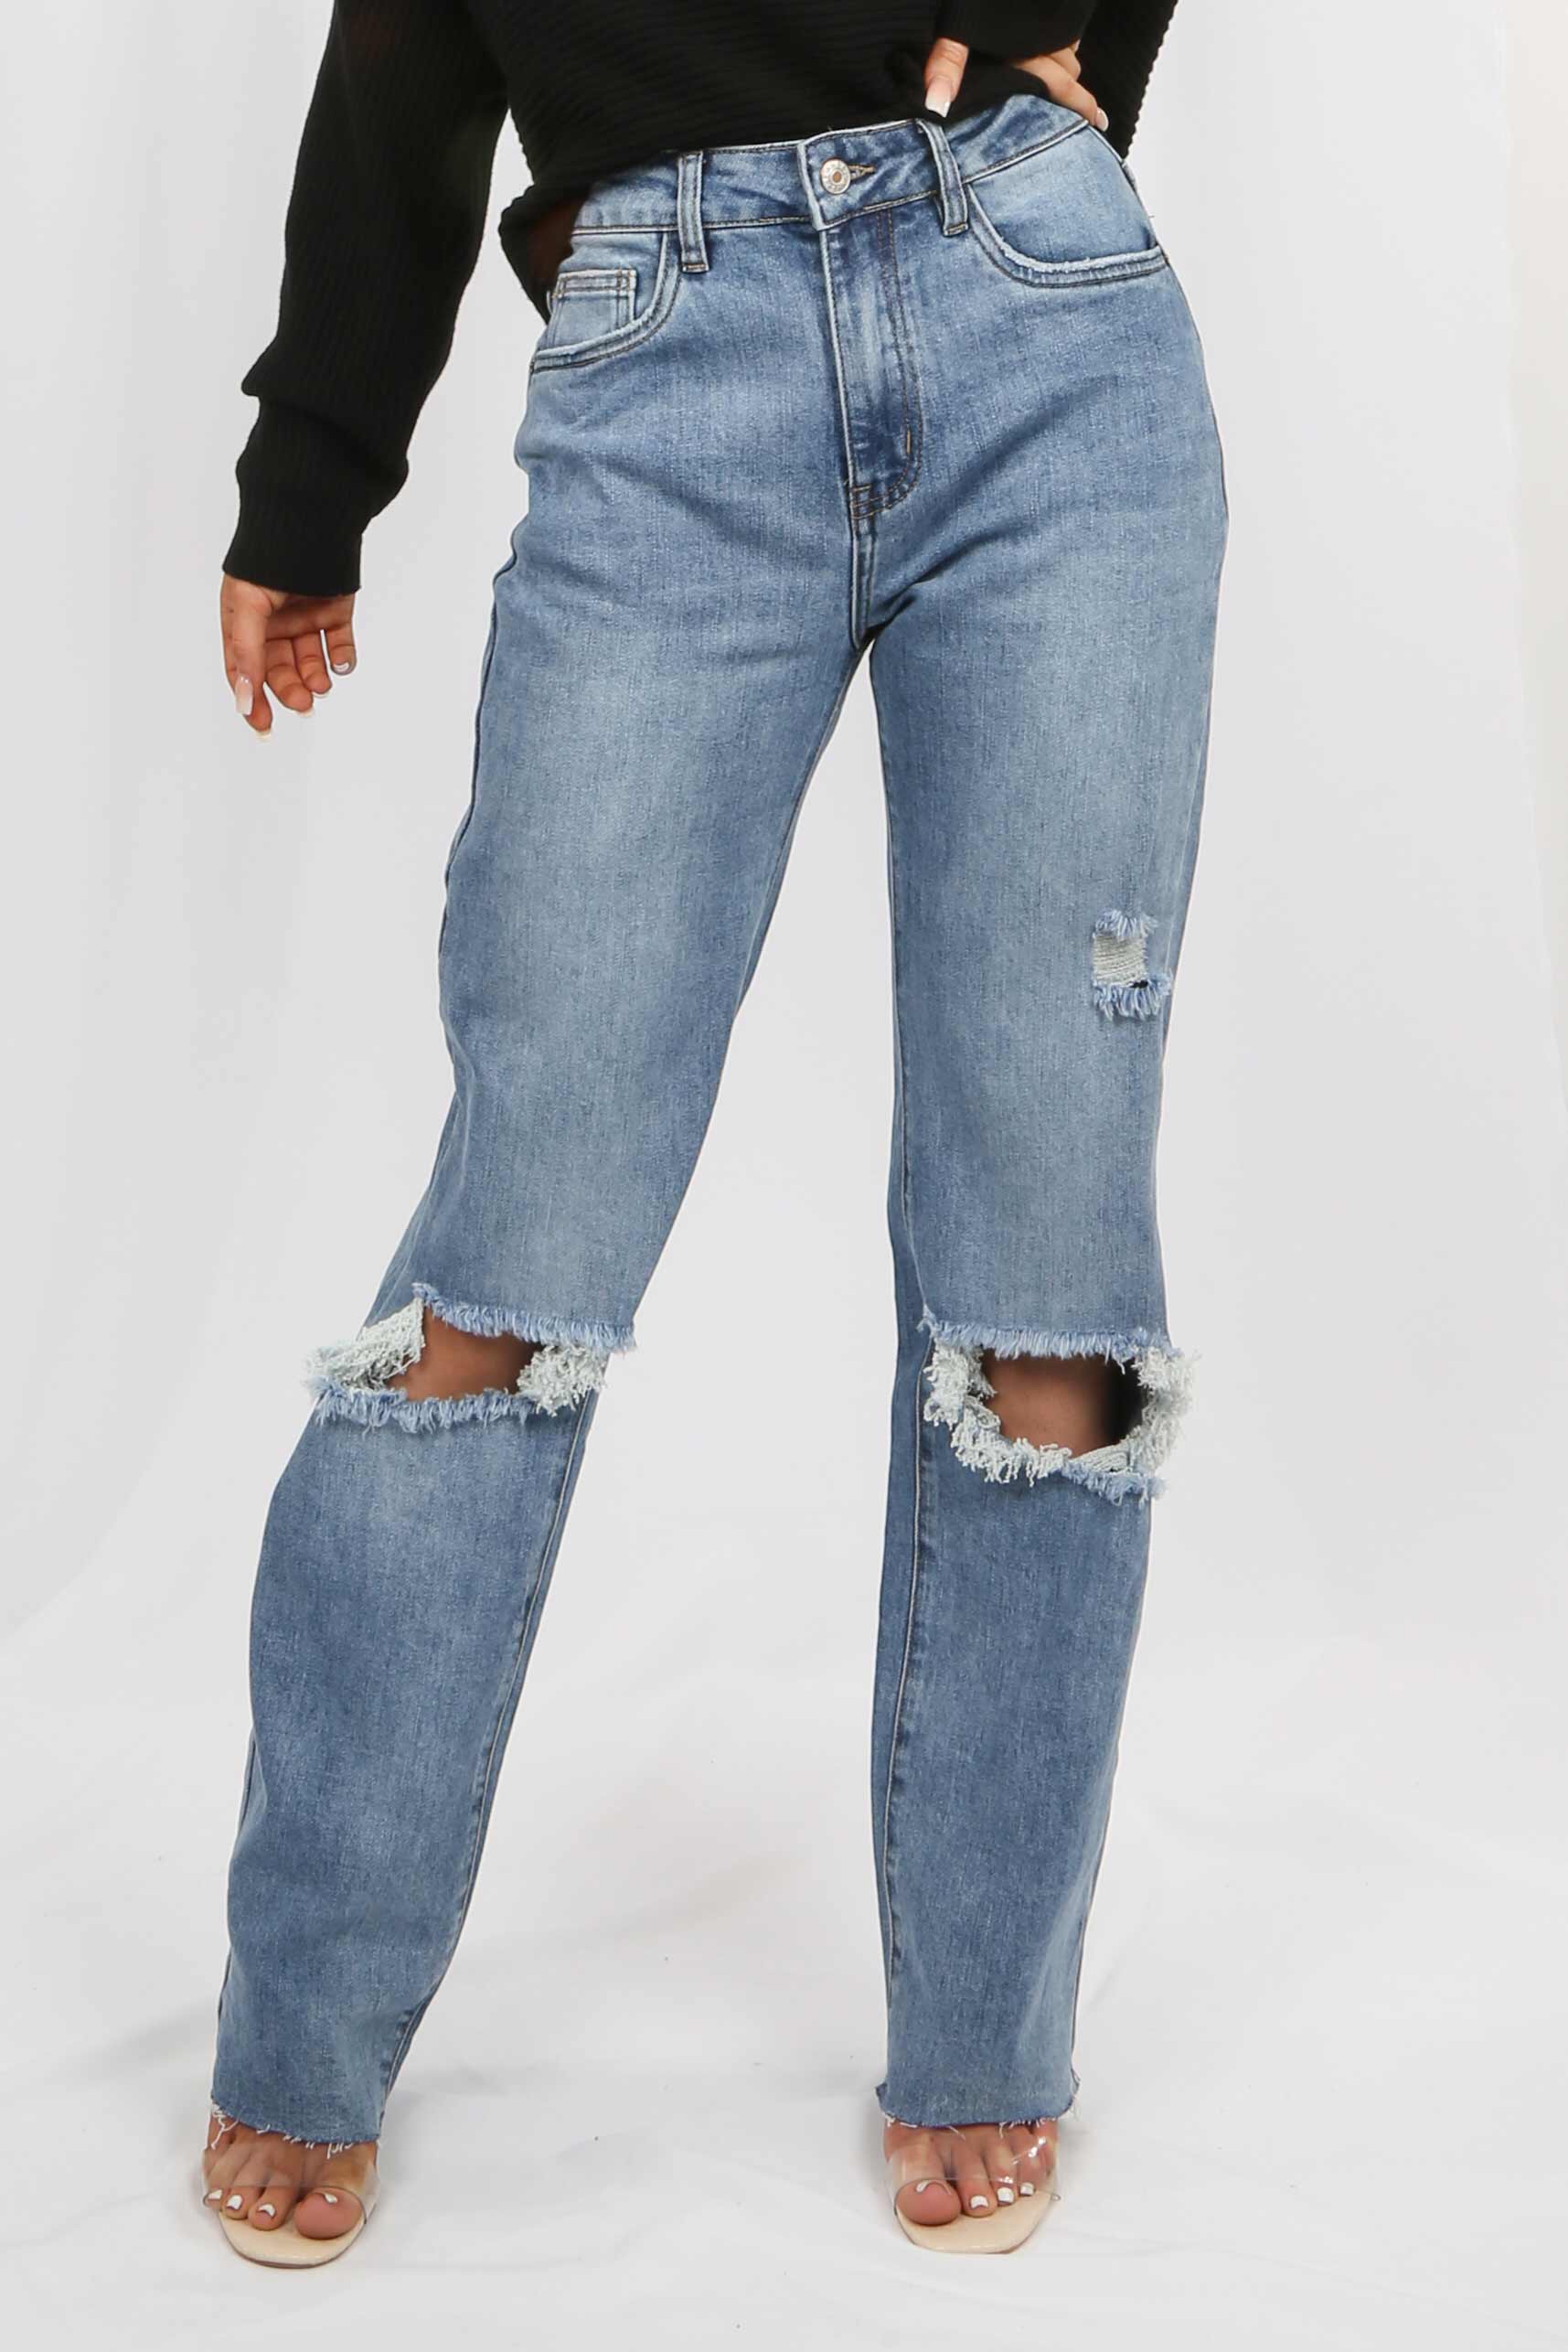 Chelsea Blue '90s Full Length Jeans